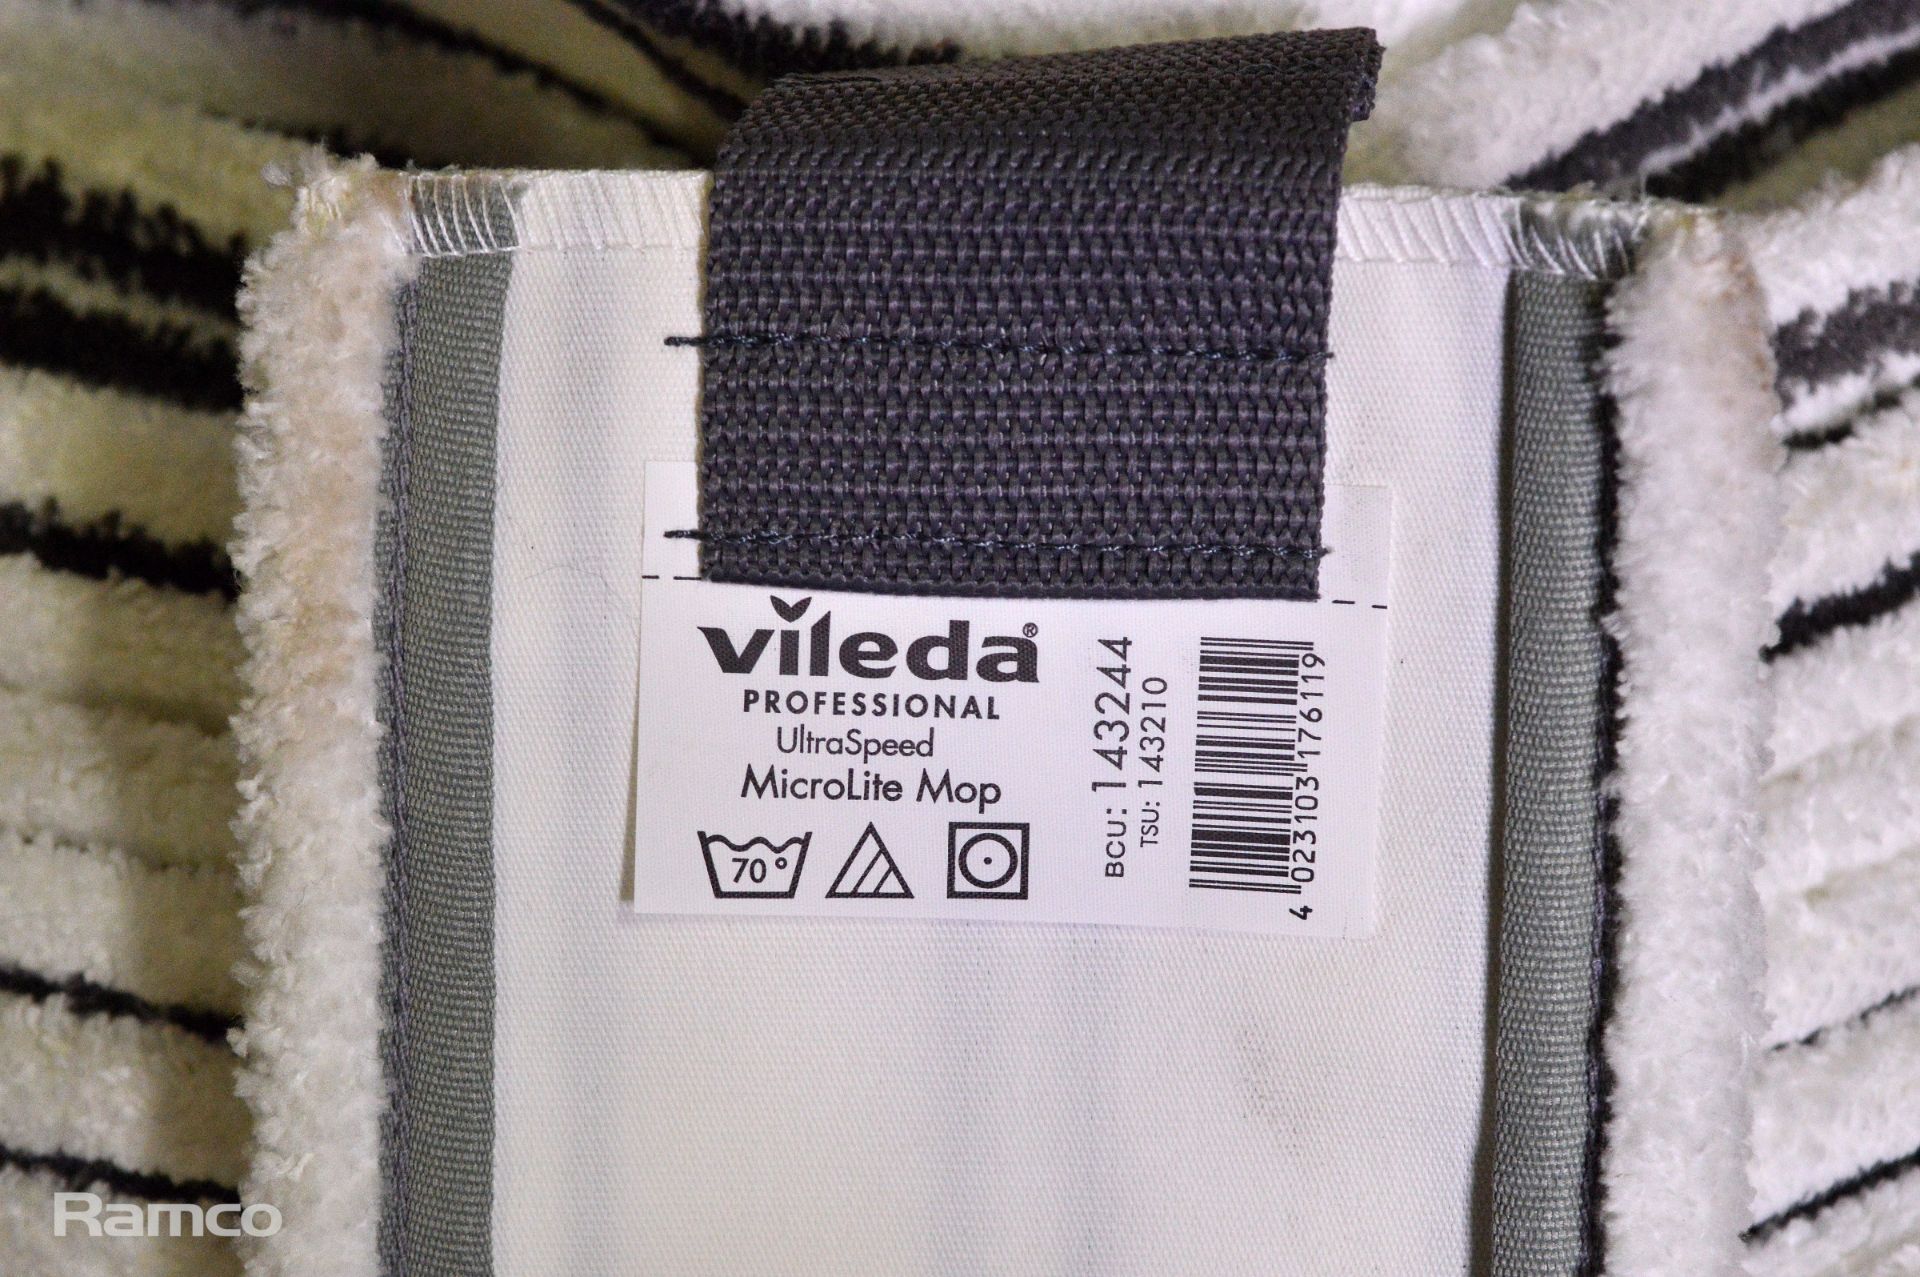 60 x Vileda UltraSpeed Microlite Mop strip heads - Image 3 of 3